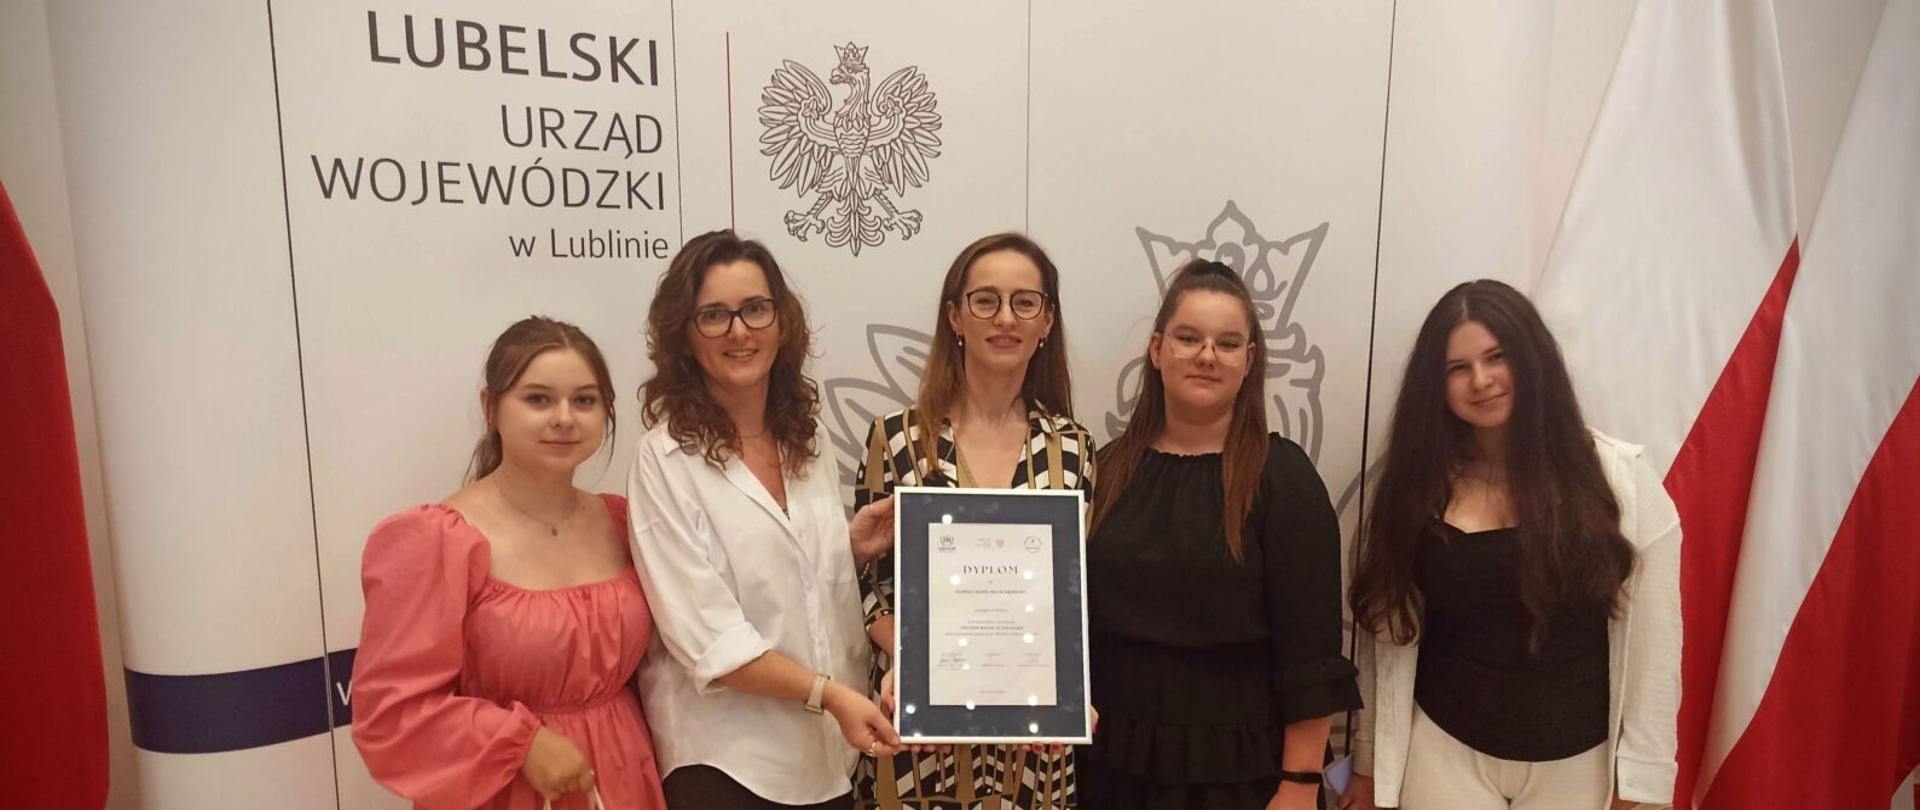 Na zdjęcie widoczne są dwie nauczycielki oraz trzy uczennice Zespołu Szkół nr 3 w Kraśniku wraz z otrzymanym dyplomem za zajęcie II miejsca w Wojewódzkim Konkursie „Jesteśmy razem i blisko siebie”.